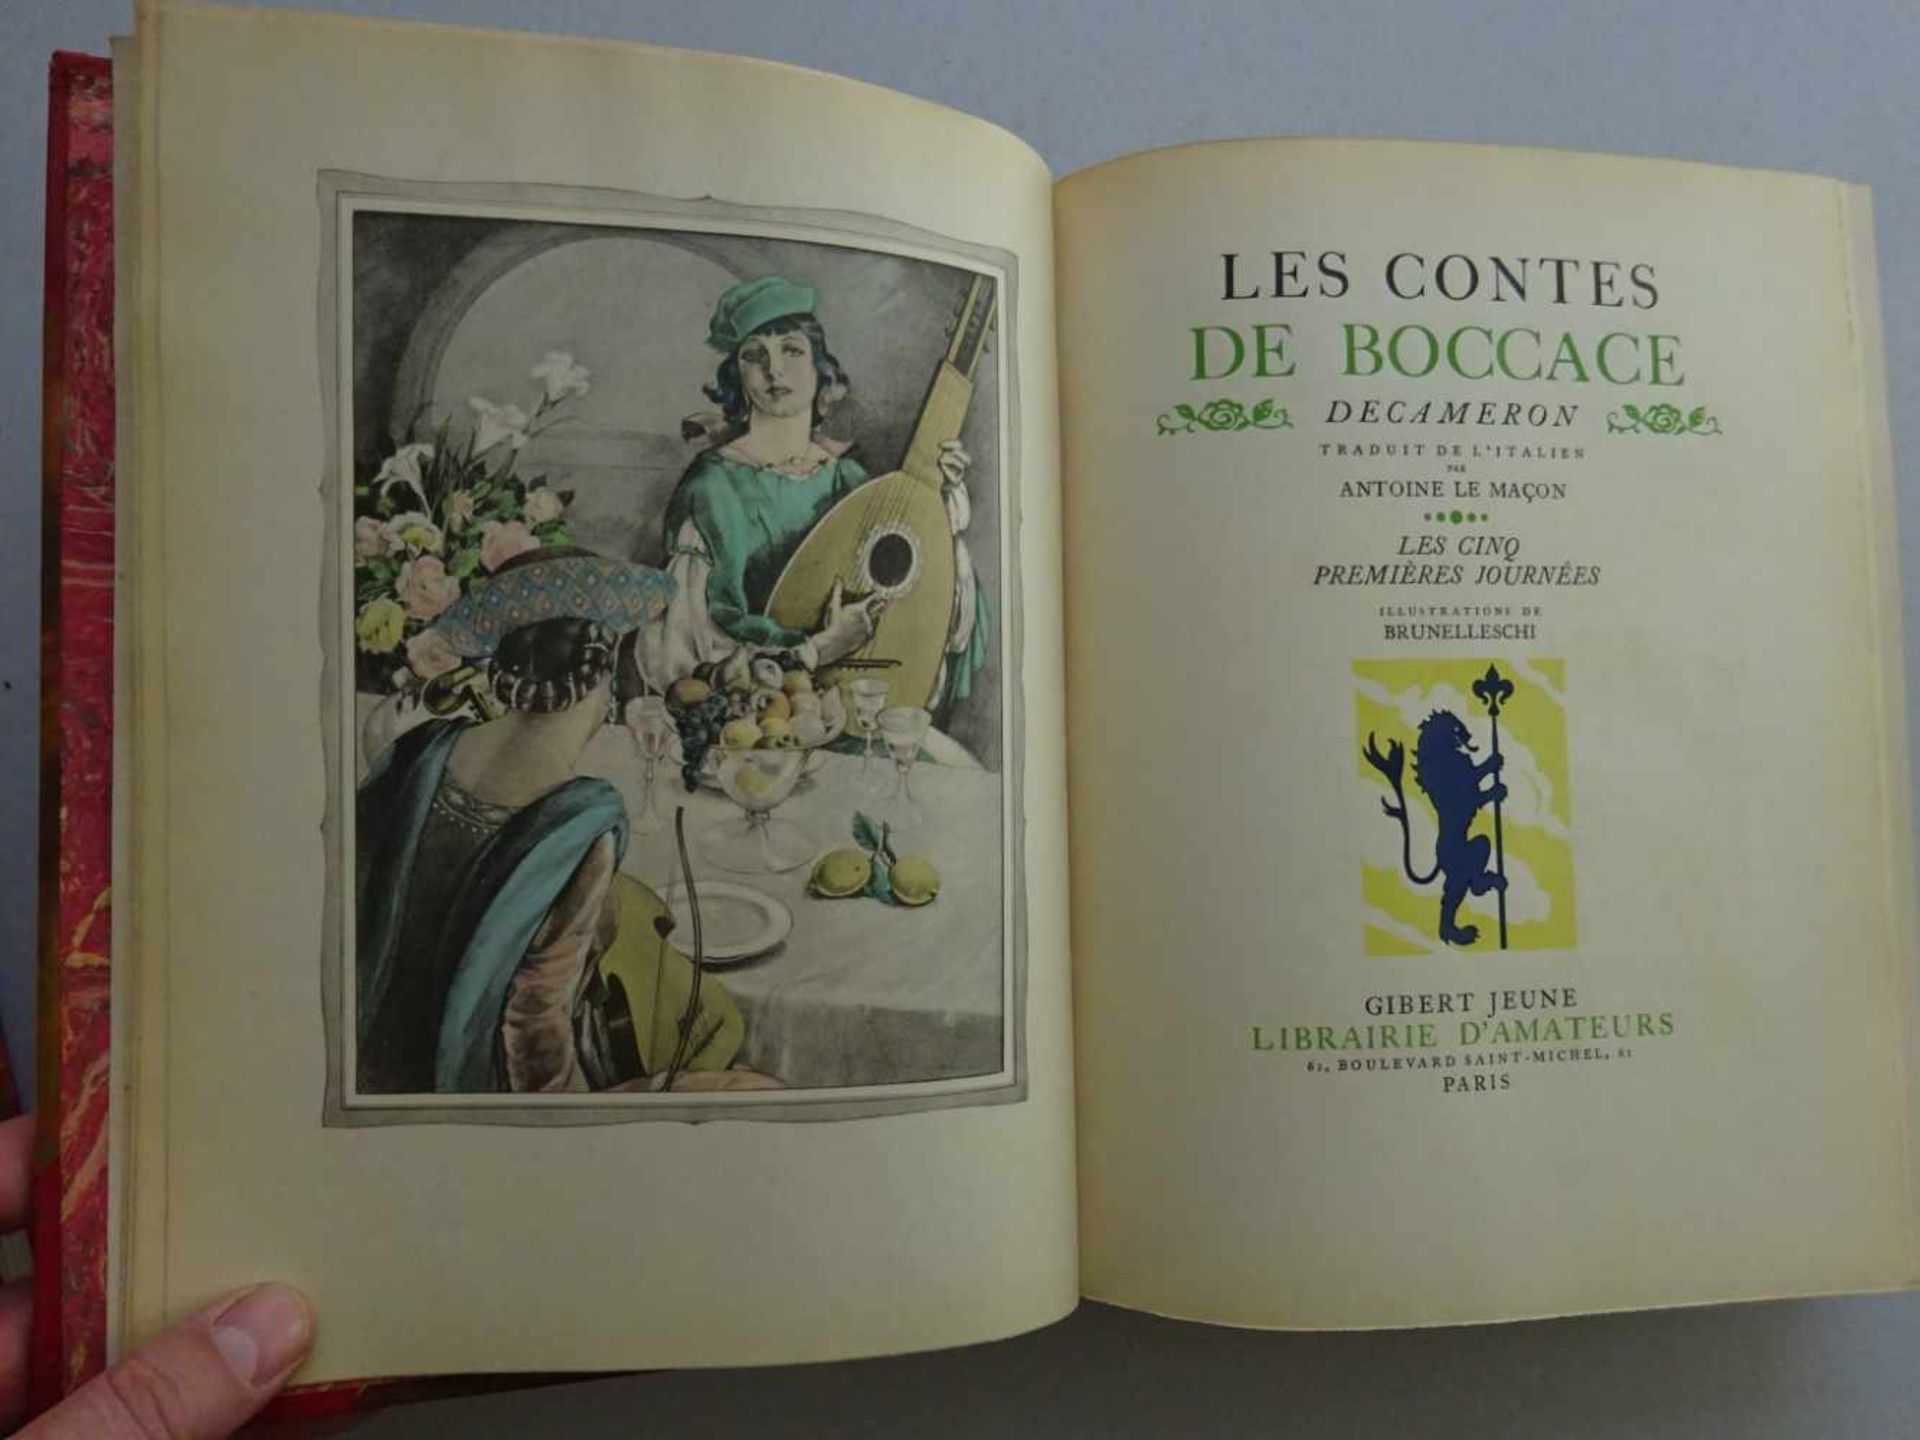 Pressendrucke.-2 illustrierte Werke in französischer Sprache mit galanten Illustrationen von Umberto - Bild 4 aus 5